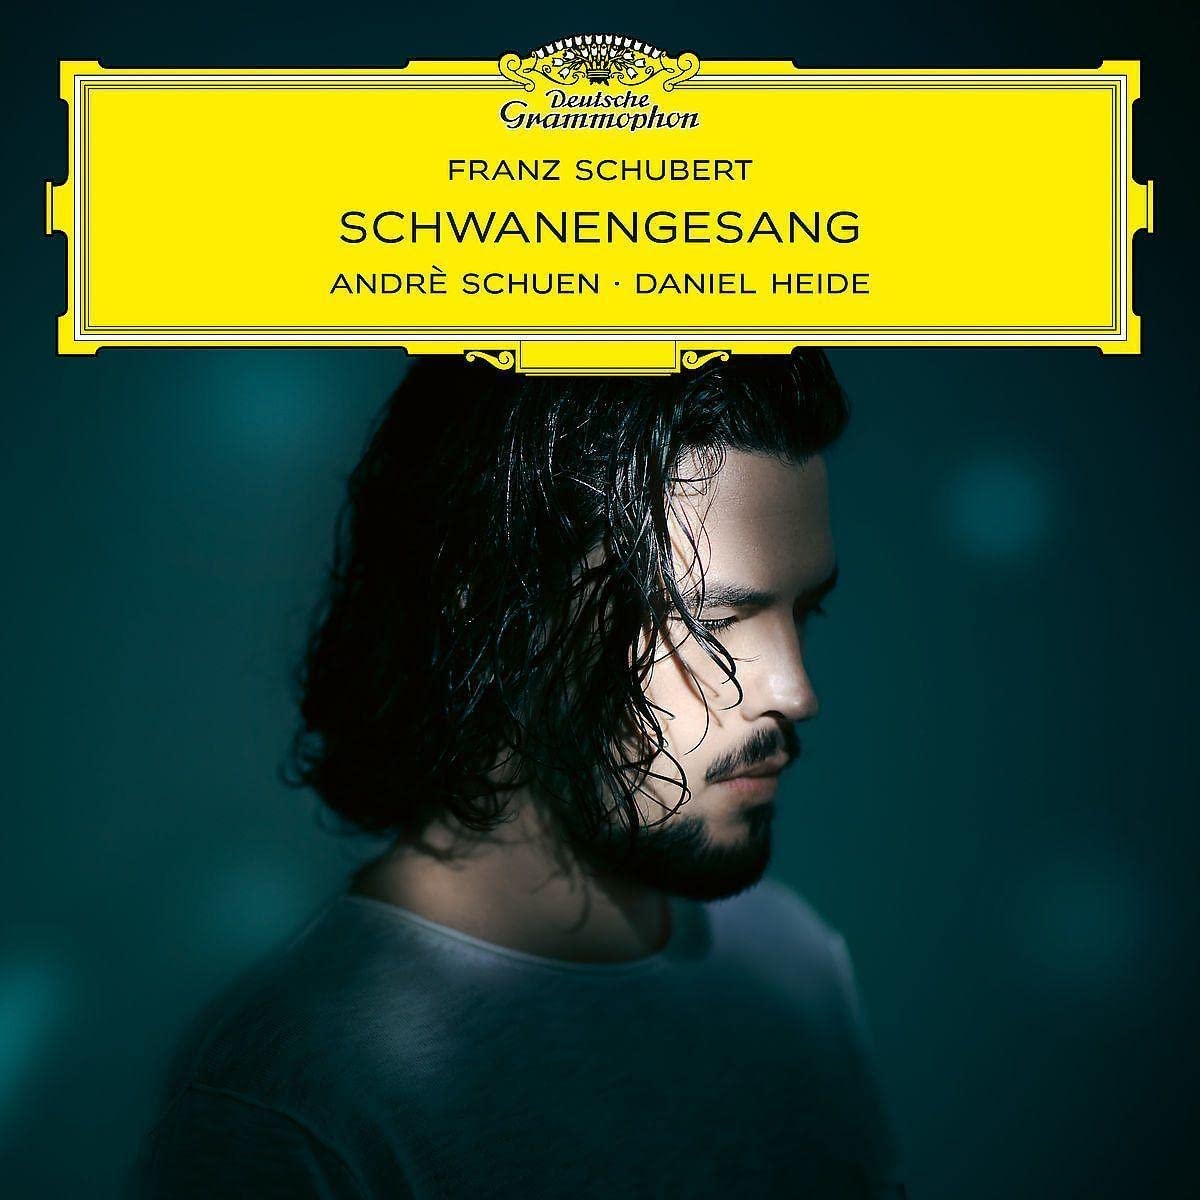 Schubert: Schwanengesang | Andre Schuen, Daniel Heide